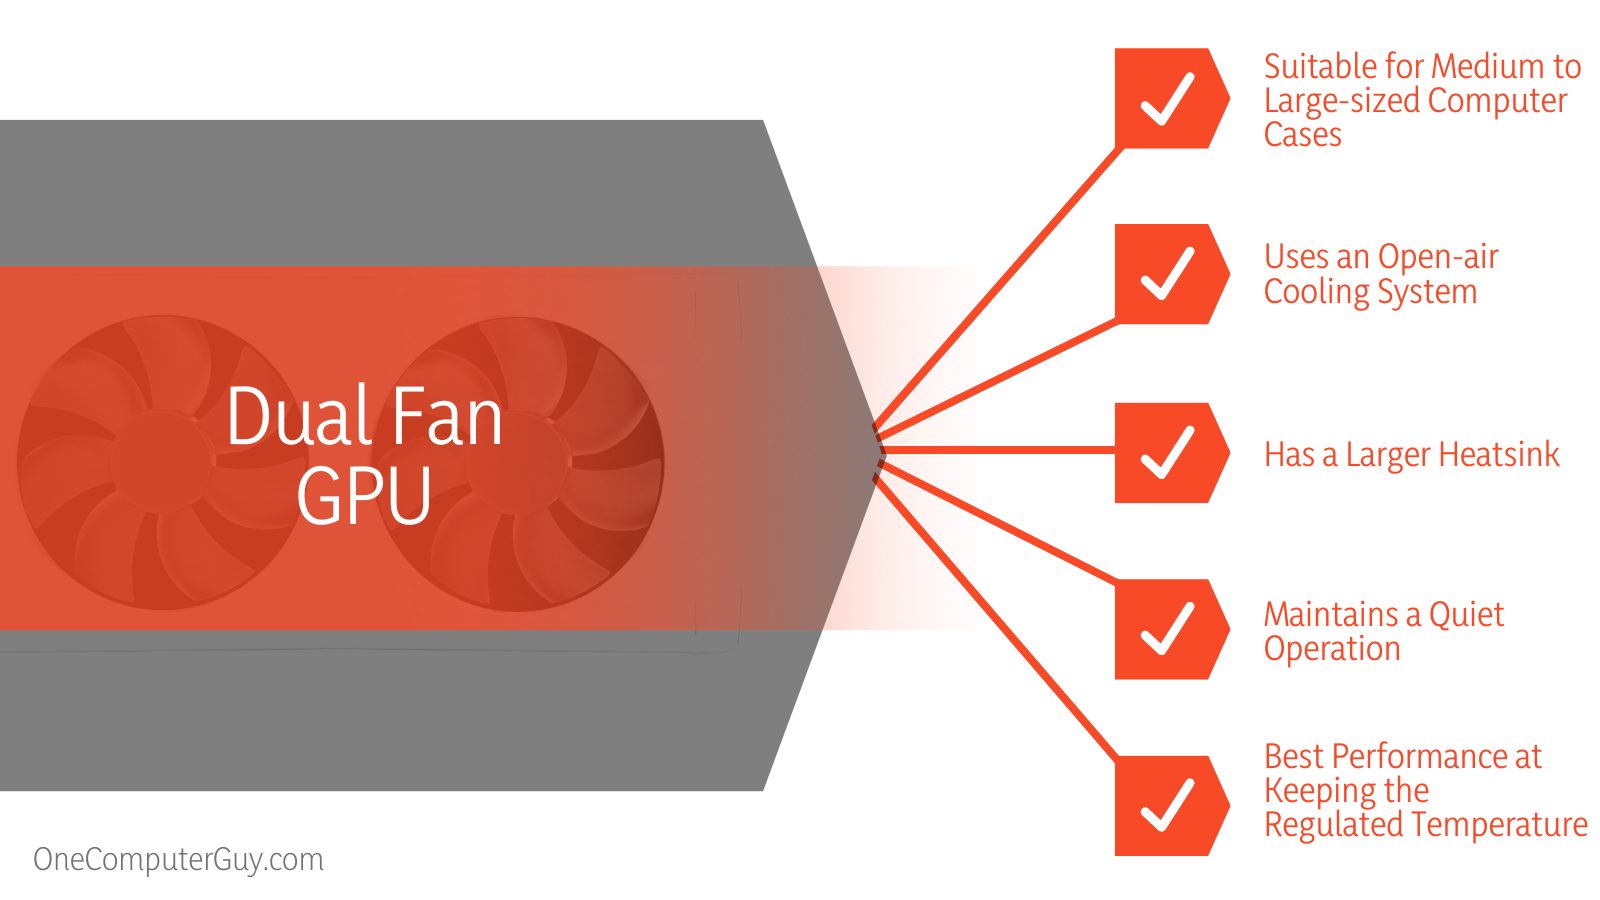 Single vs. Dual Fan GPU Specifications